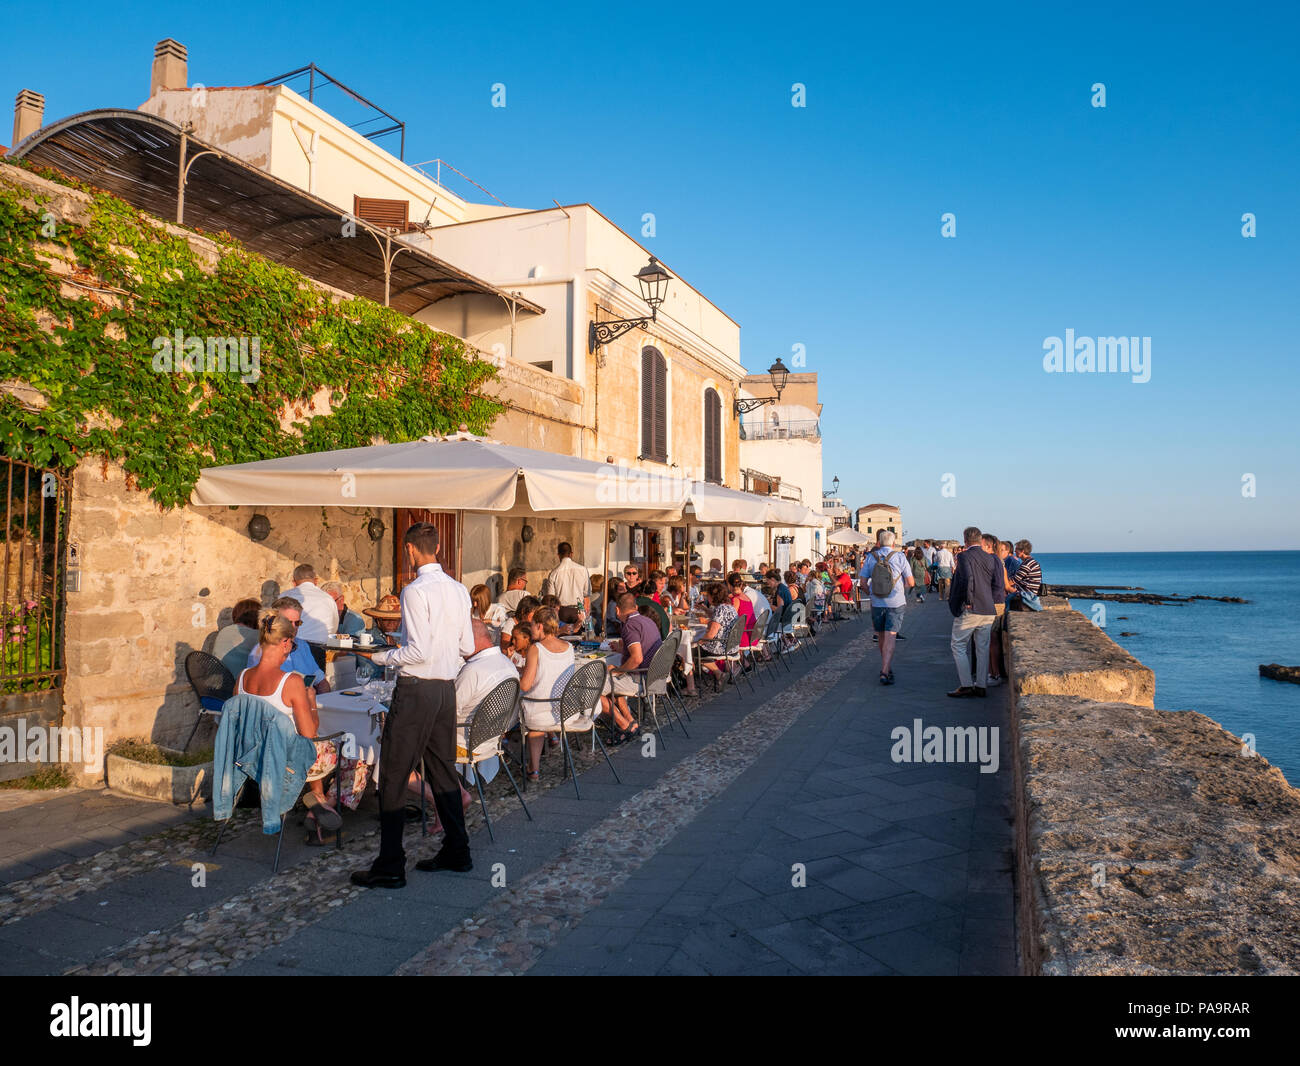 Le restaurant en front de mer, Alghero, Sardaigne, Italie Banque D'Images